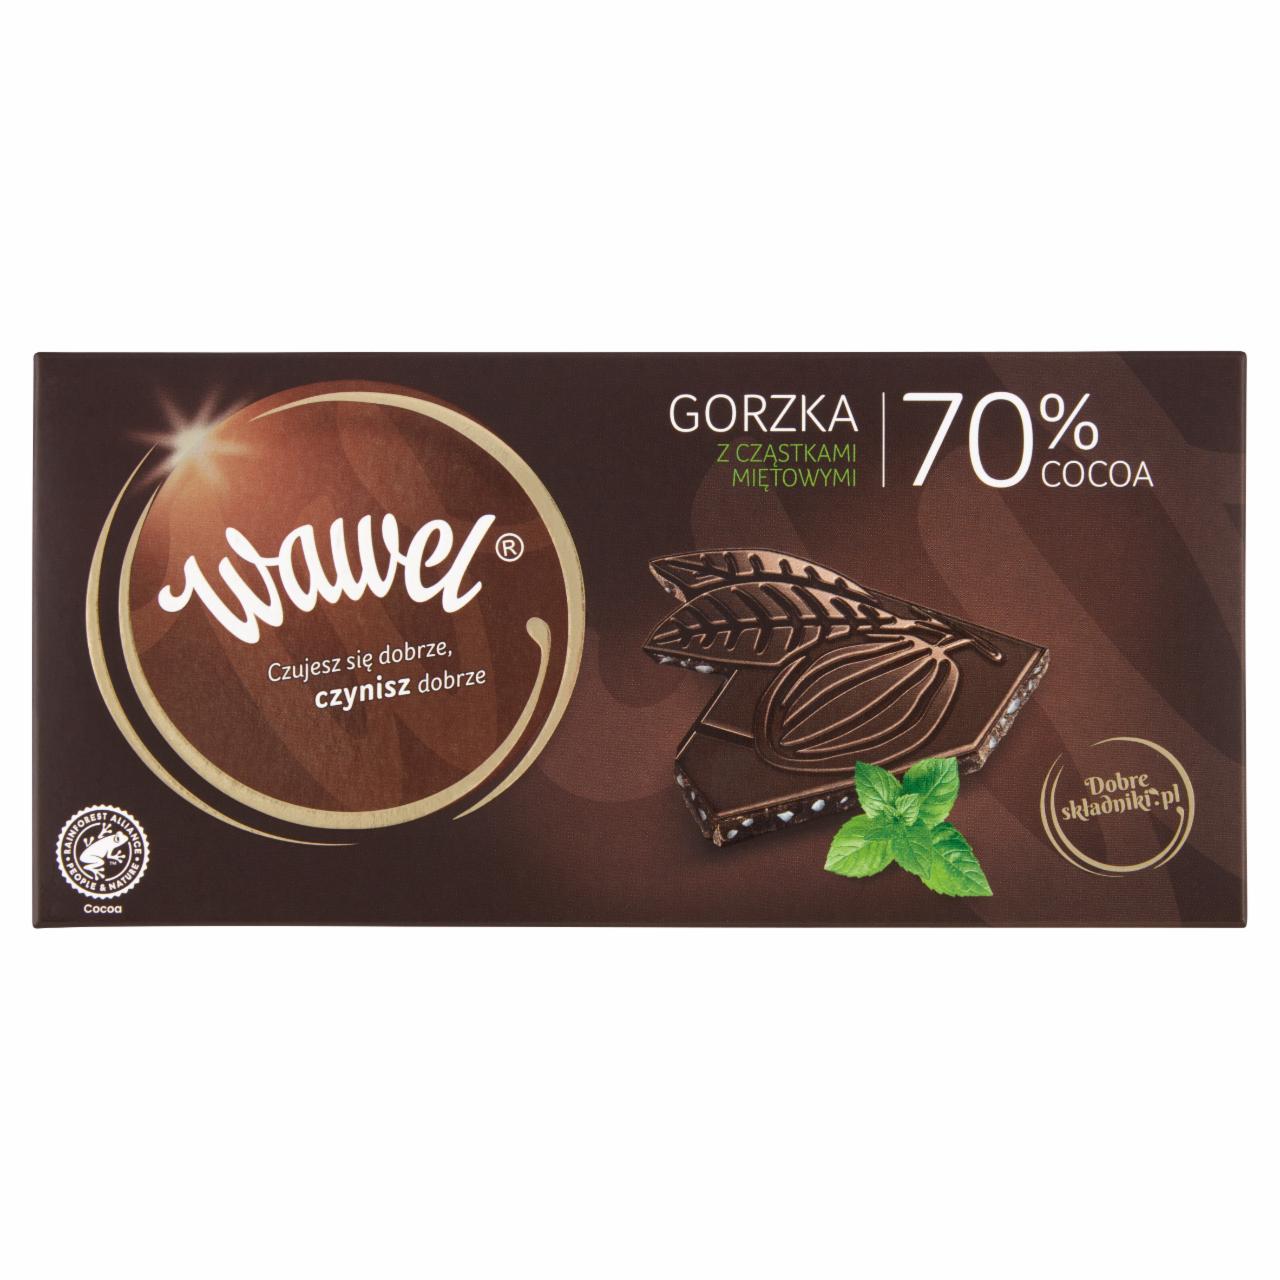 Zdjęcia - Wawel Czekolada gorzka z cząstkami miętowymi 70% Cocoa 100 g